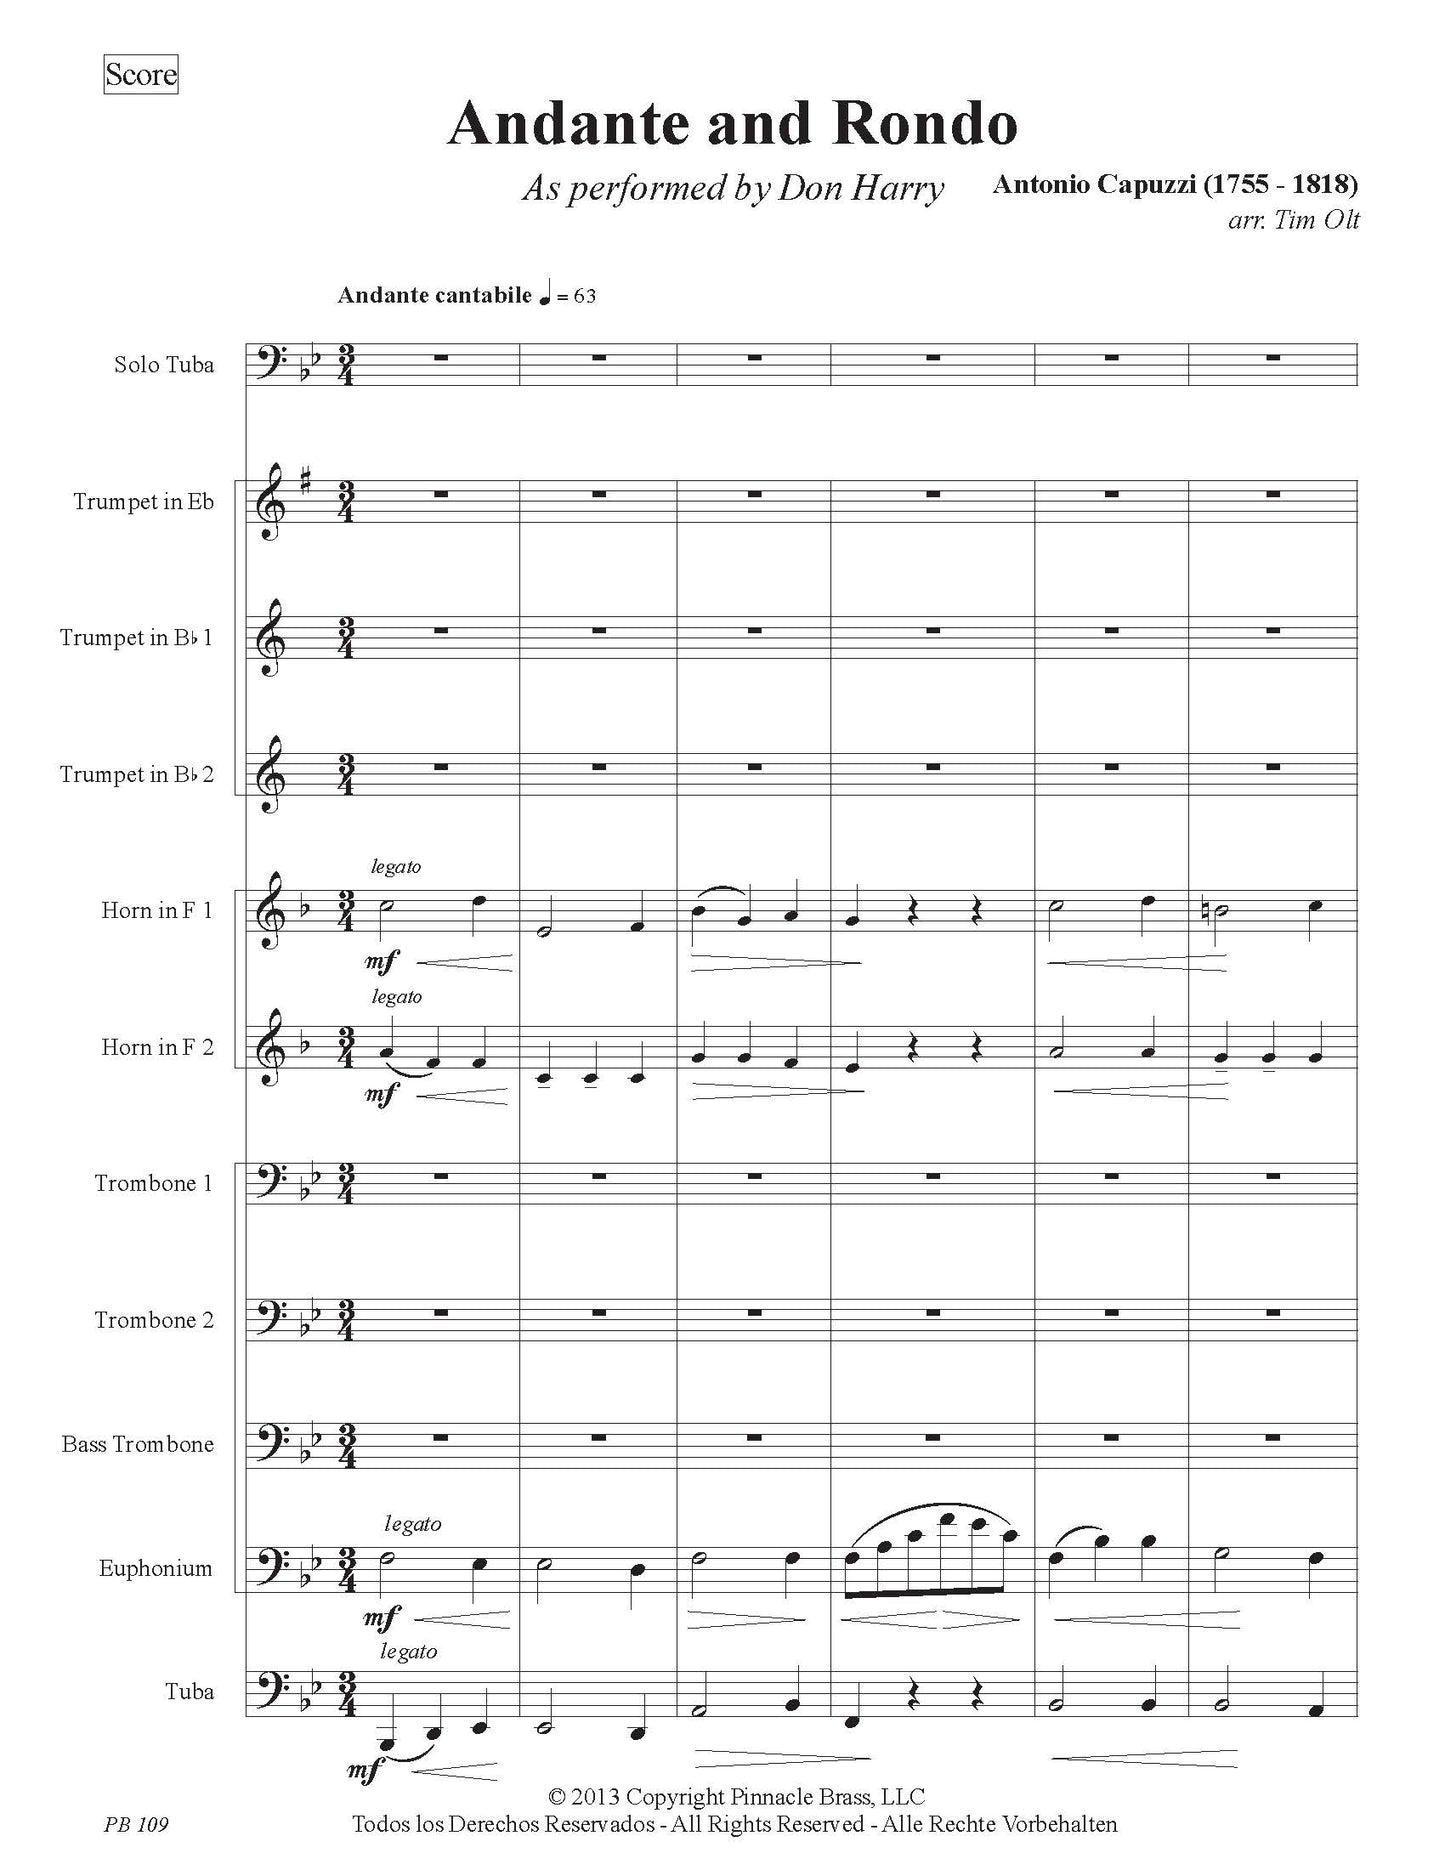 Capuzzi - Andante and Rondo for Solo Tuba and Brass Ensemble